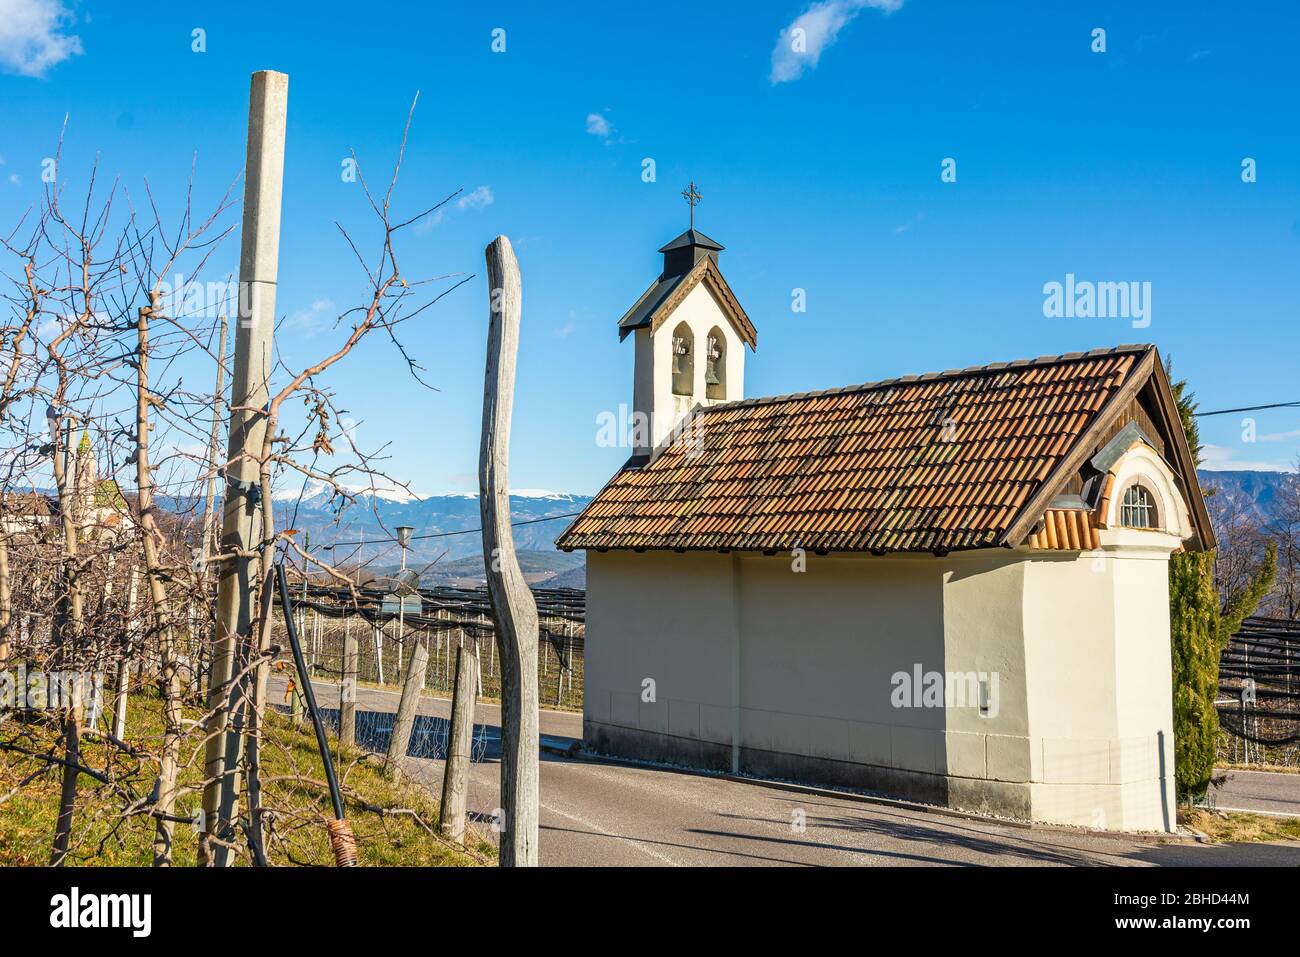 Piccola cappella a Castelvecchio (Altenburg) in Alto Adige dedicata al culto mariano - Castelvecchio, Alto Adige, Italia settentrionale - Europa Foto Stock